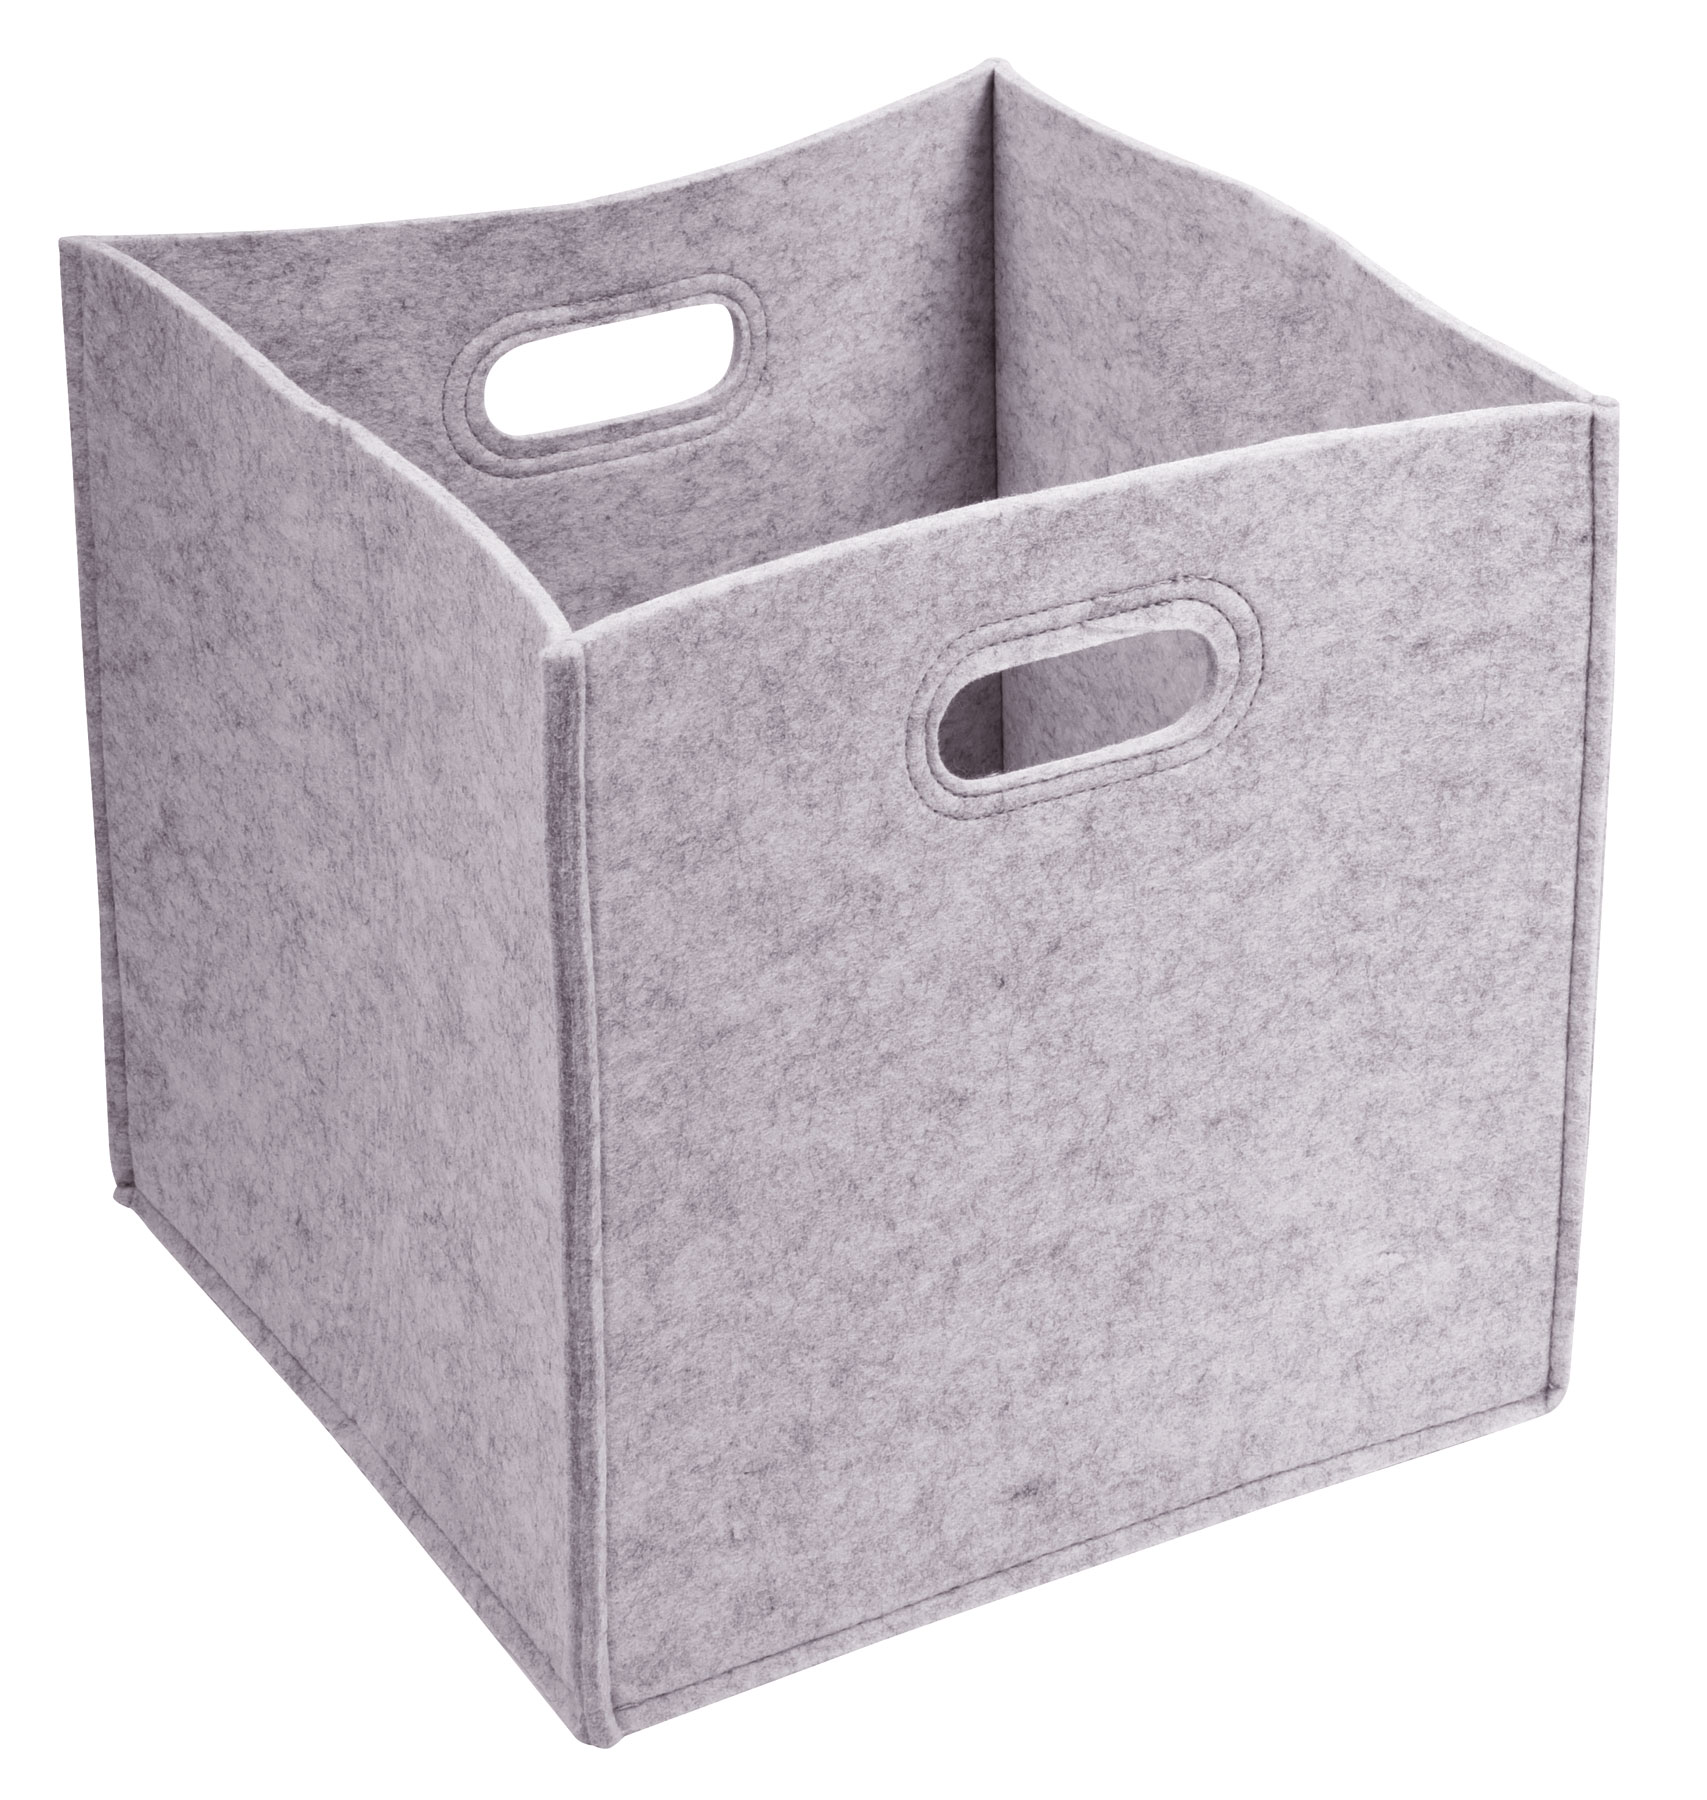 Felt storage box HYGGE - grey